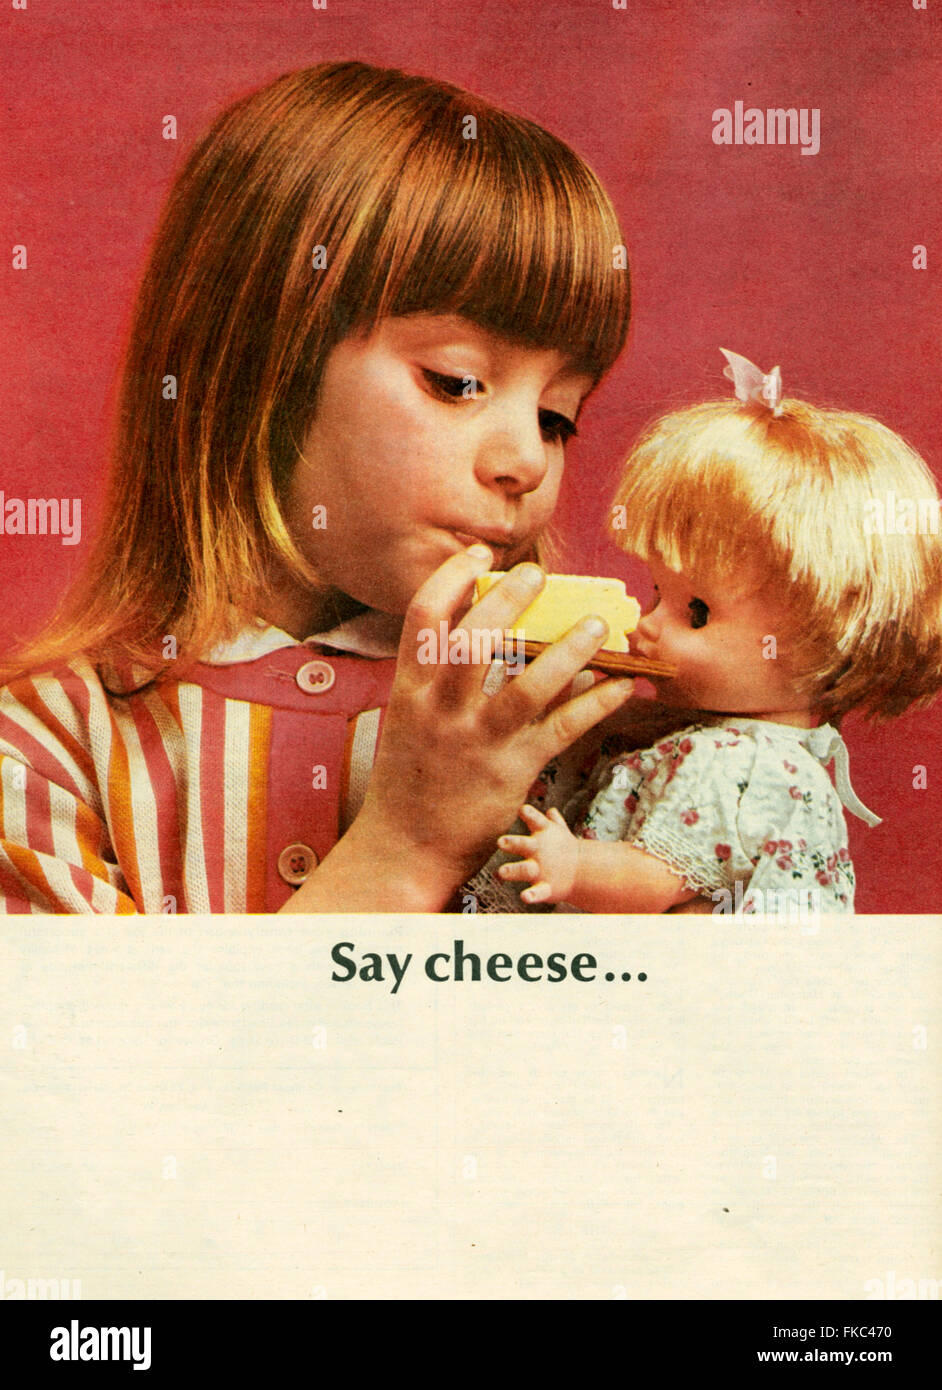 1960s UK Cheese Magazine Advert Stock Photo